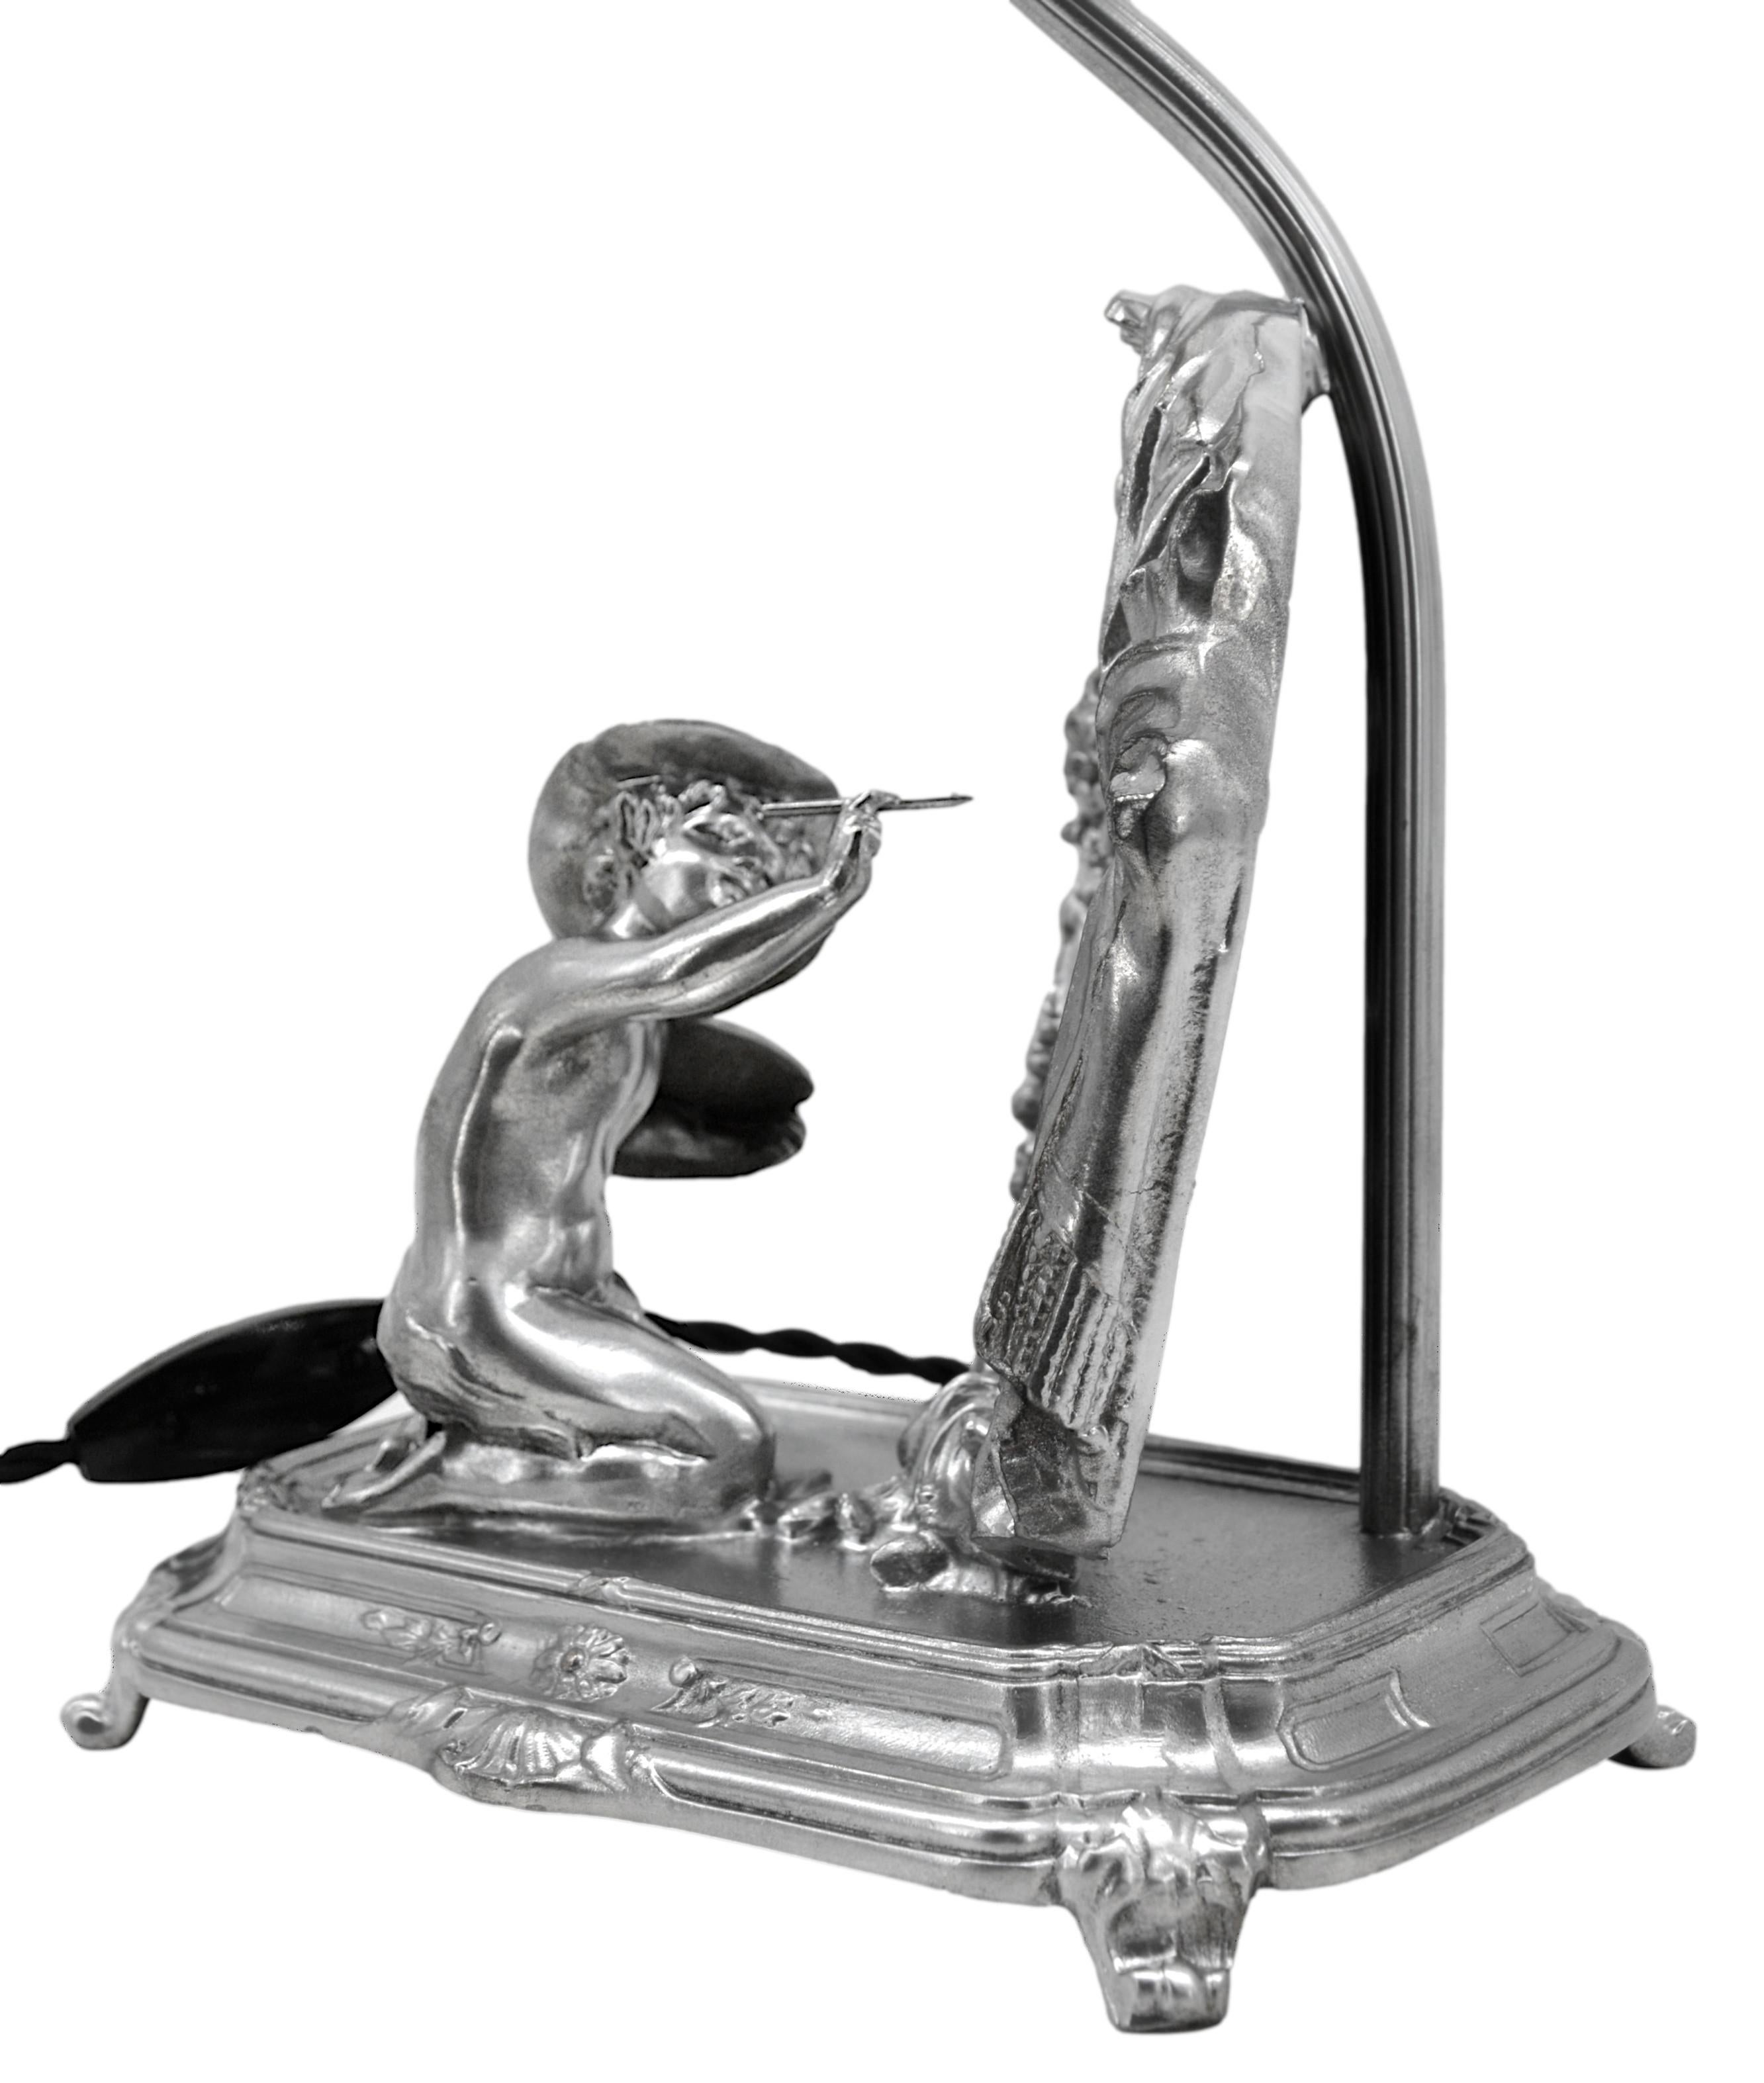 Tischleuchte, die auch als Spiegel dient und ein Puttenbild darstellt. Zinn, Stoff und Spiegel. Frankreich, ca. 1900. Der Lampenschirm ist nicht zeitgemäß. Maße: Höhe: 17.9